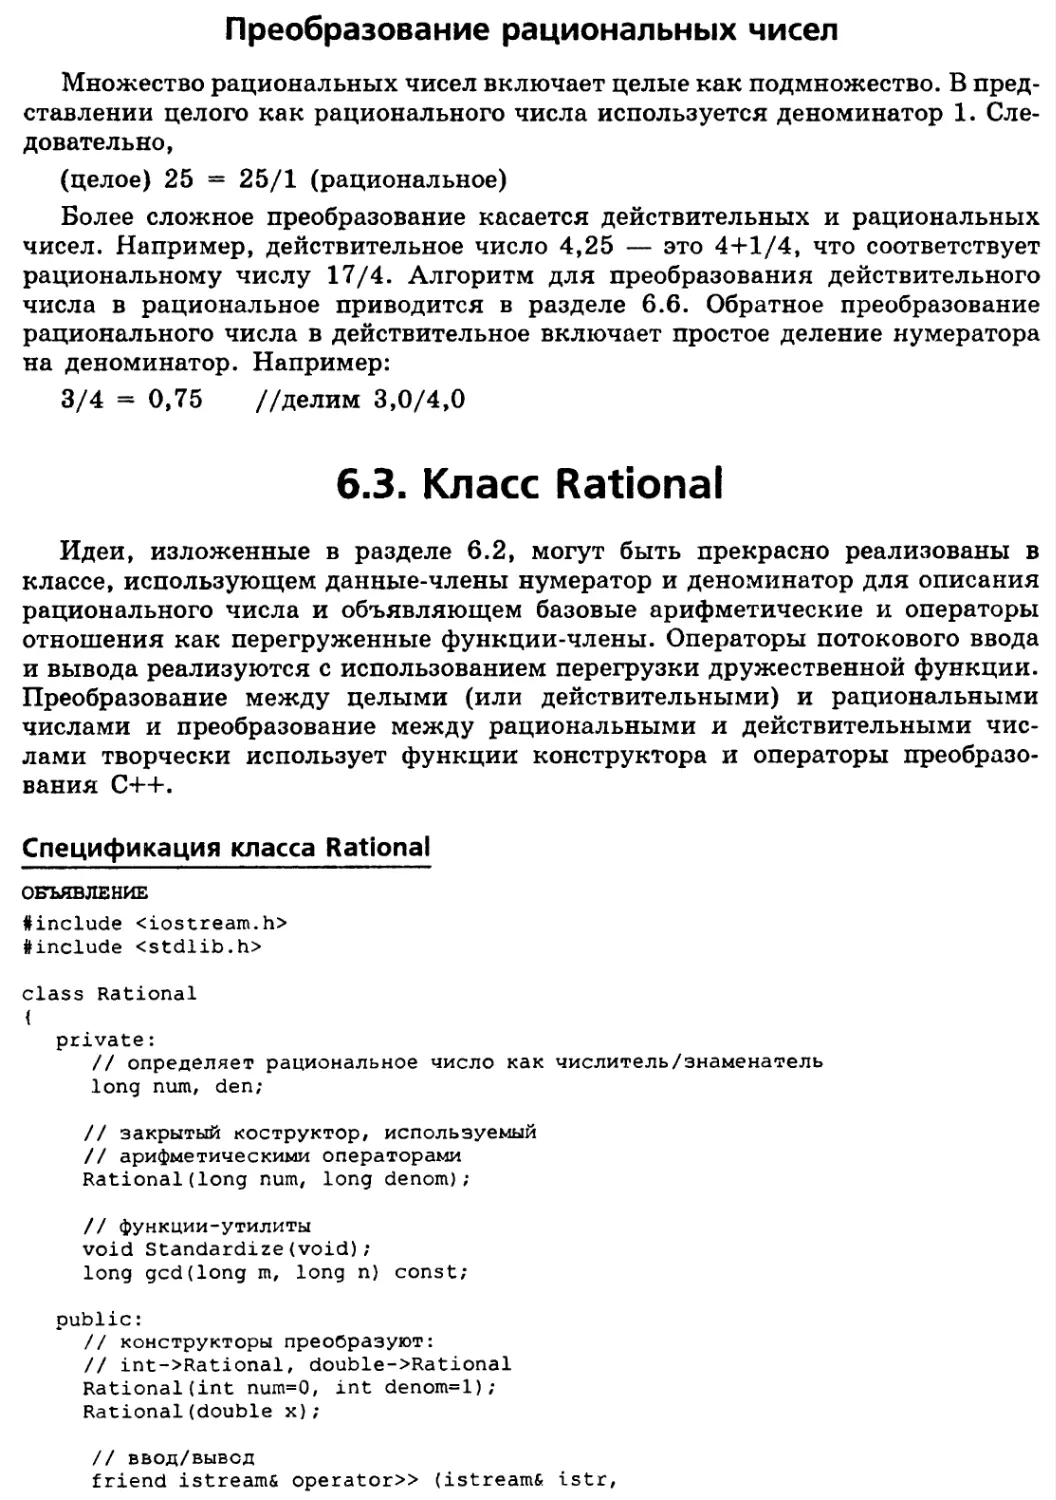 Преобразование рациональных чисел
6.3. Класс Rational